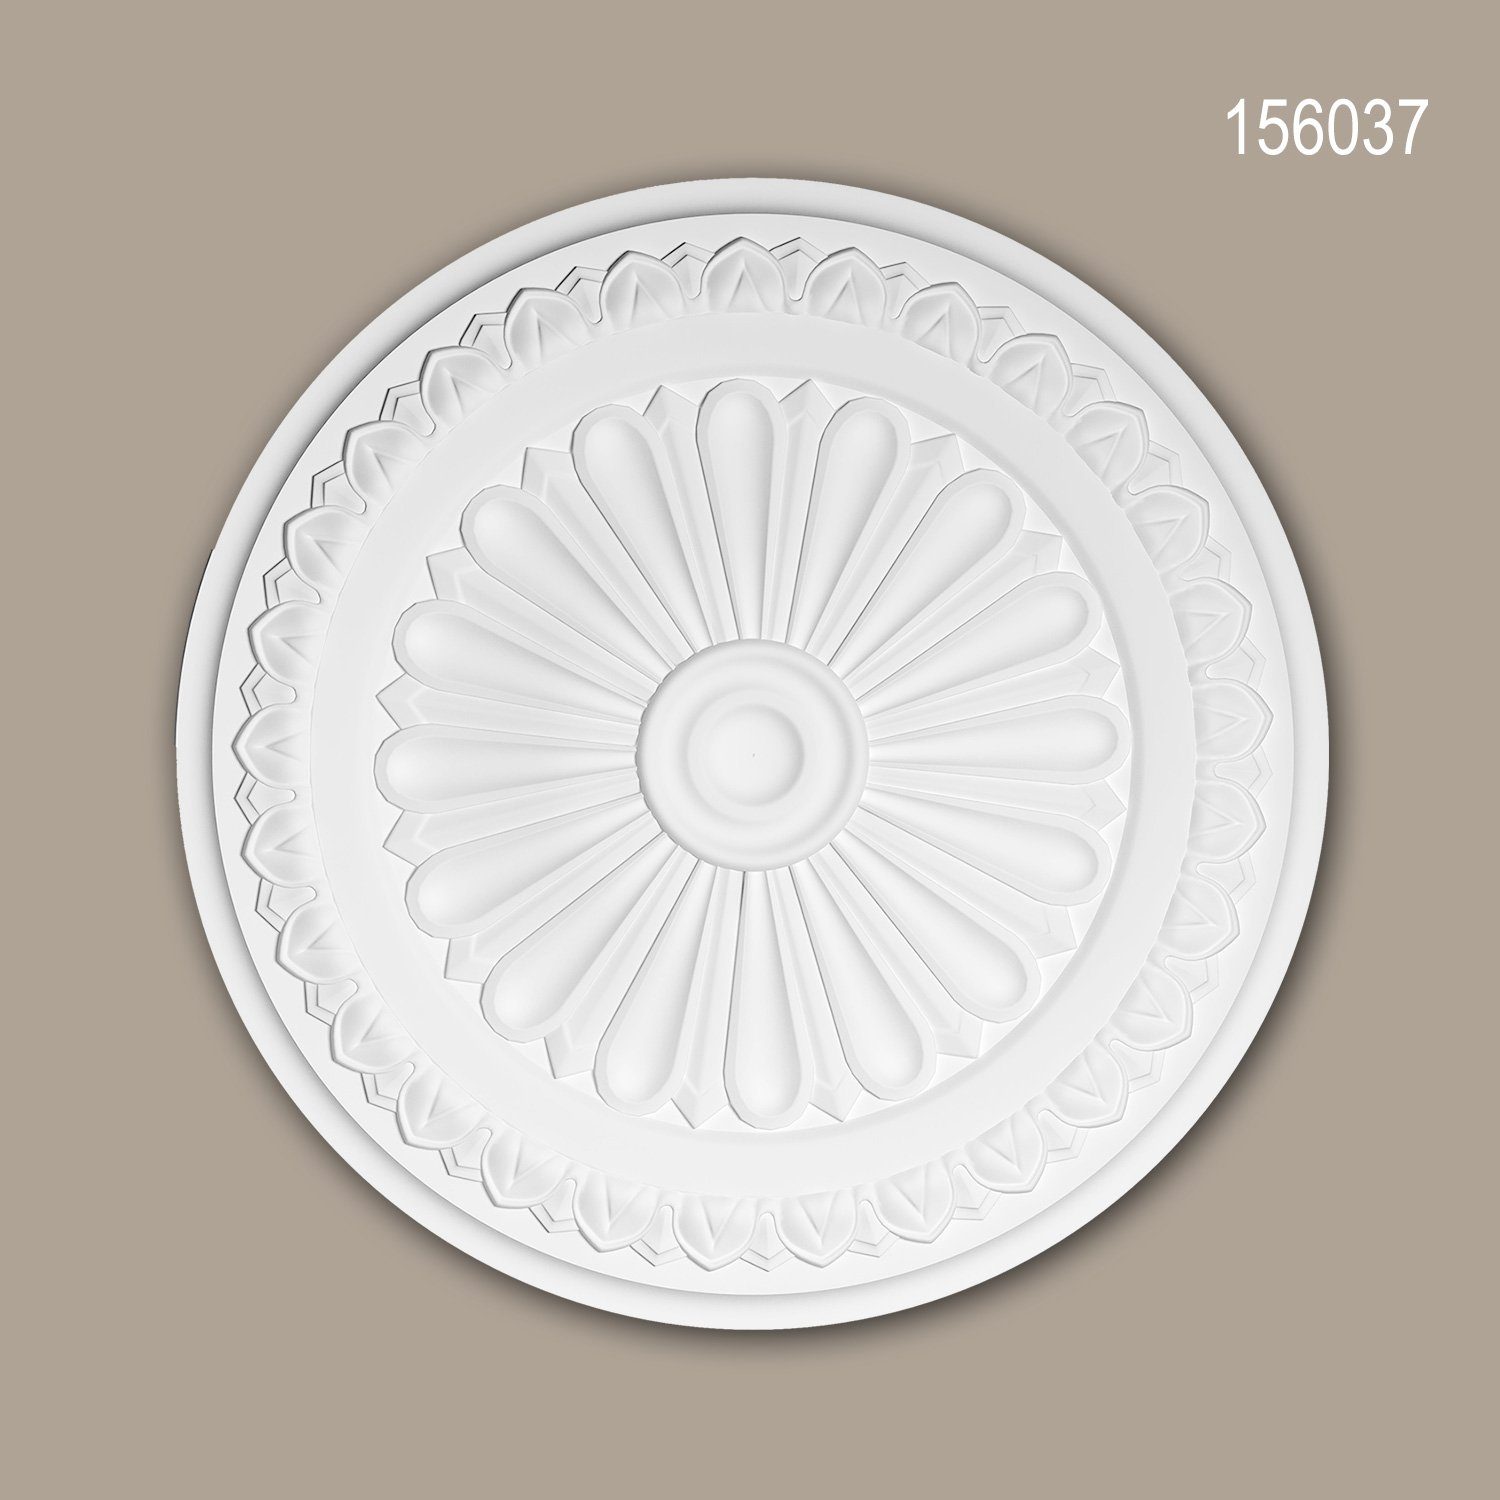 Profhome Decken-Rosette 156037 (Rosette, 1 St., Deckenrosette, Medallion, Stuckrosette, Deckenelement, Zierelement, Durchmesser 33 cm), weiß, vorgrundiert, Stil: Neo-Klassizismus | Wandobjekte